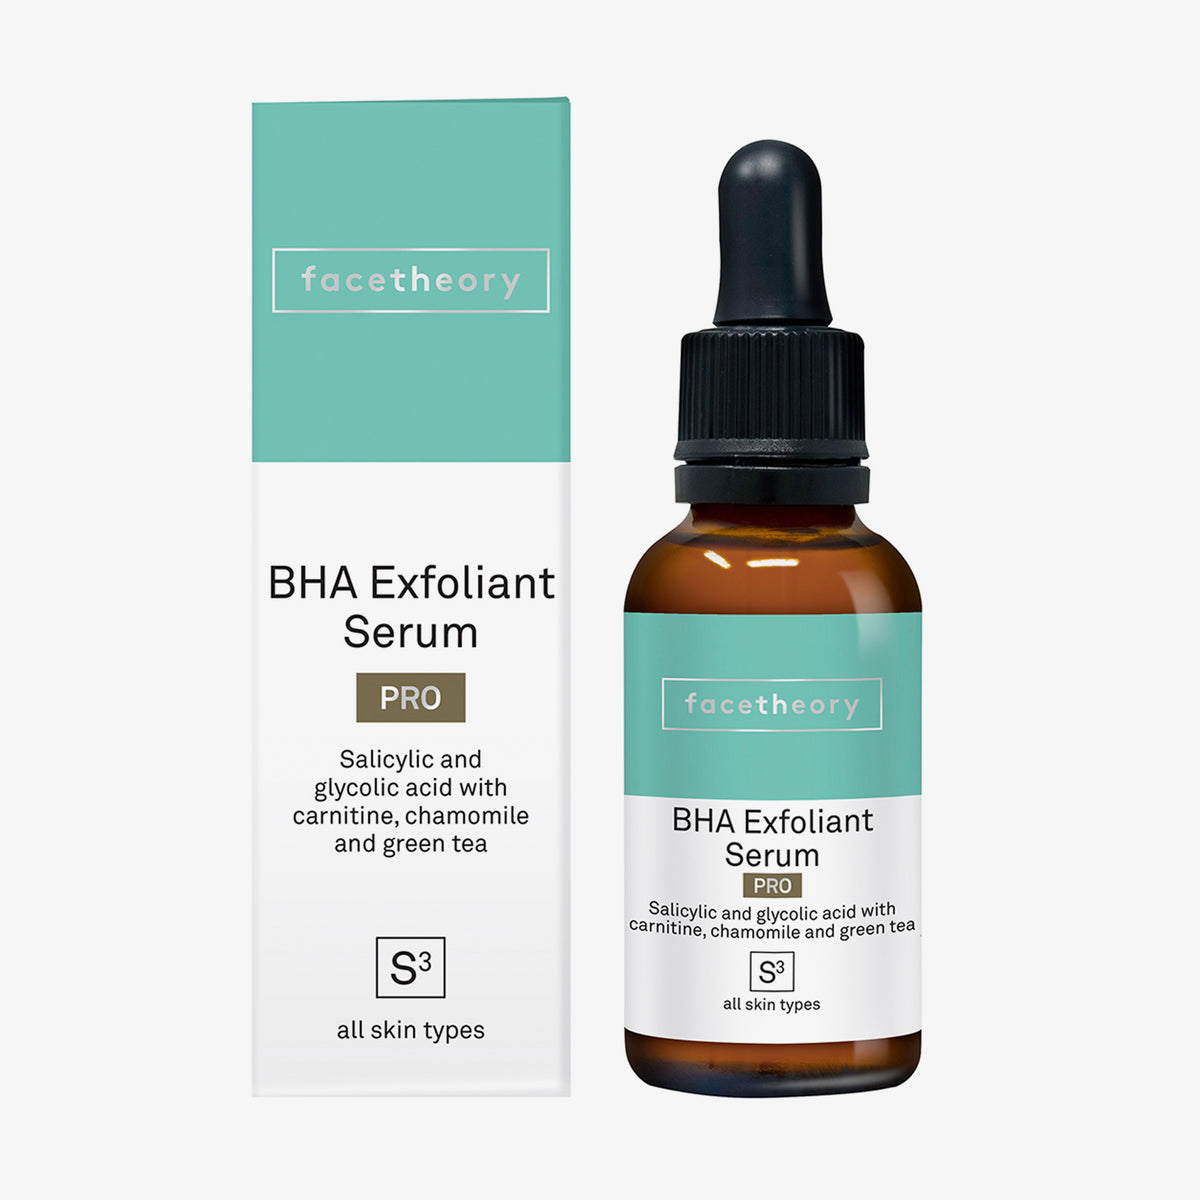 facetheory | BHA Exfoliating Serum Pro